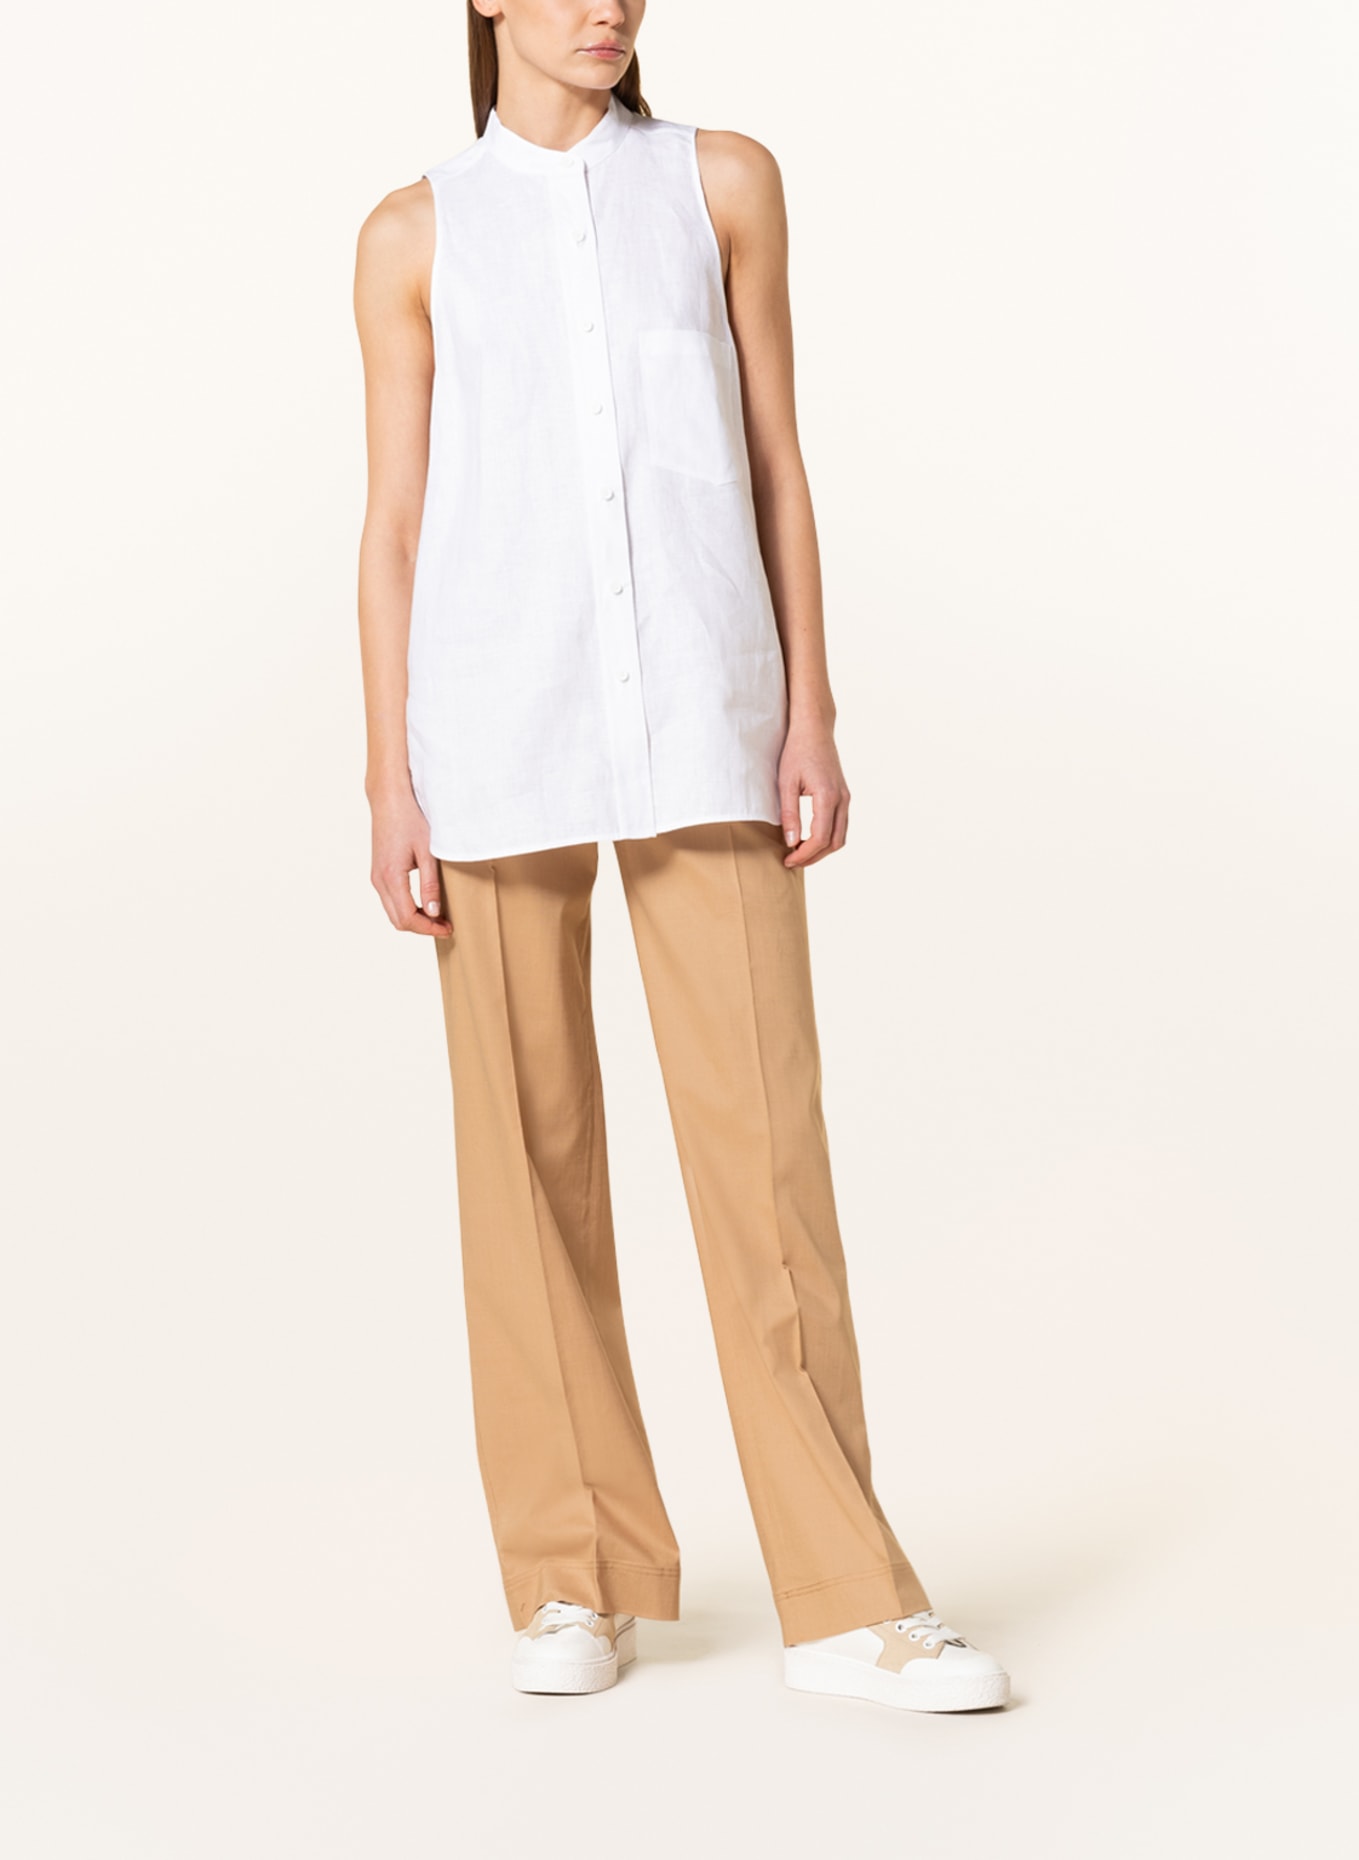 Calvin Klein Blouse top made of linen, Color: WHITE (Image 2)